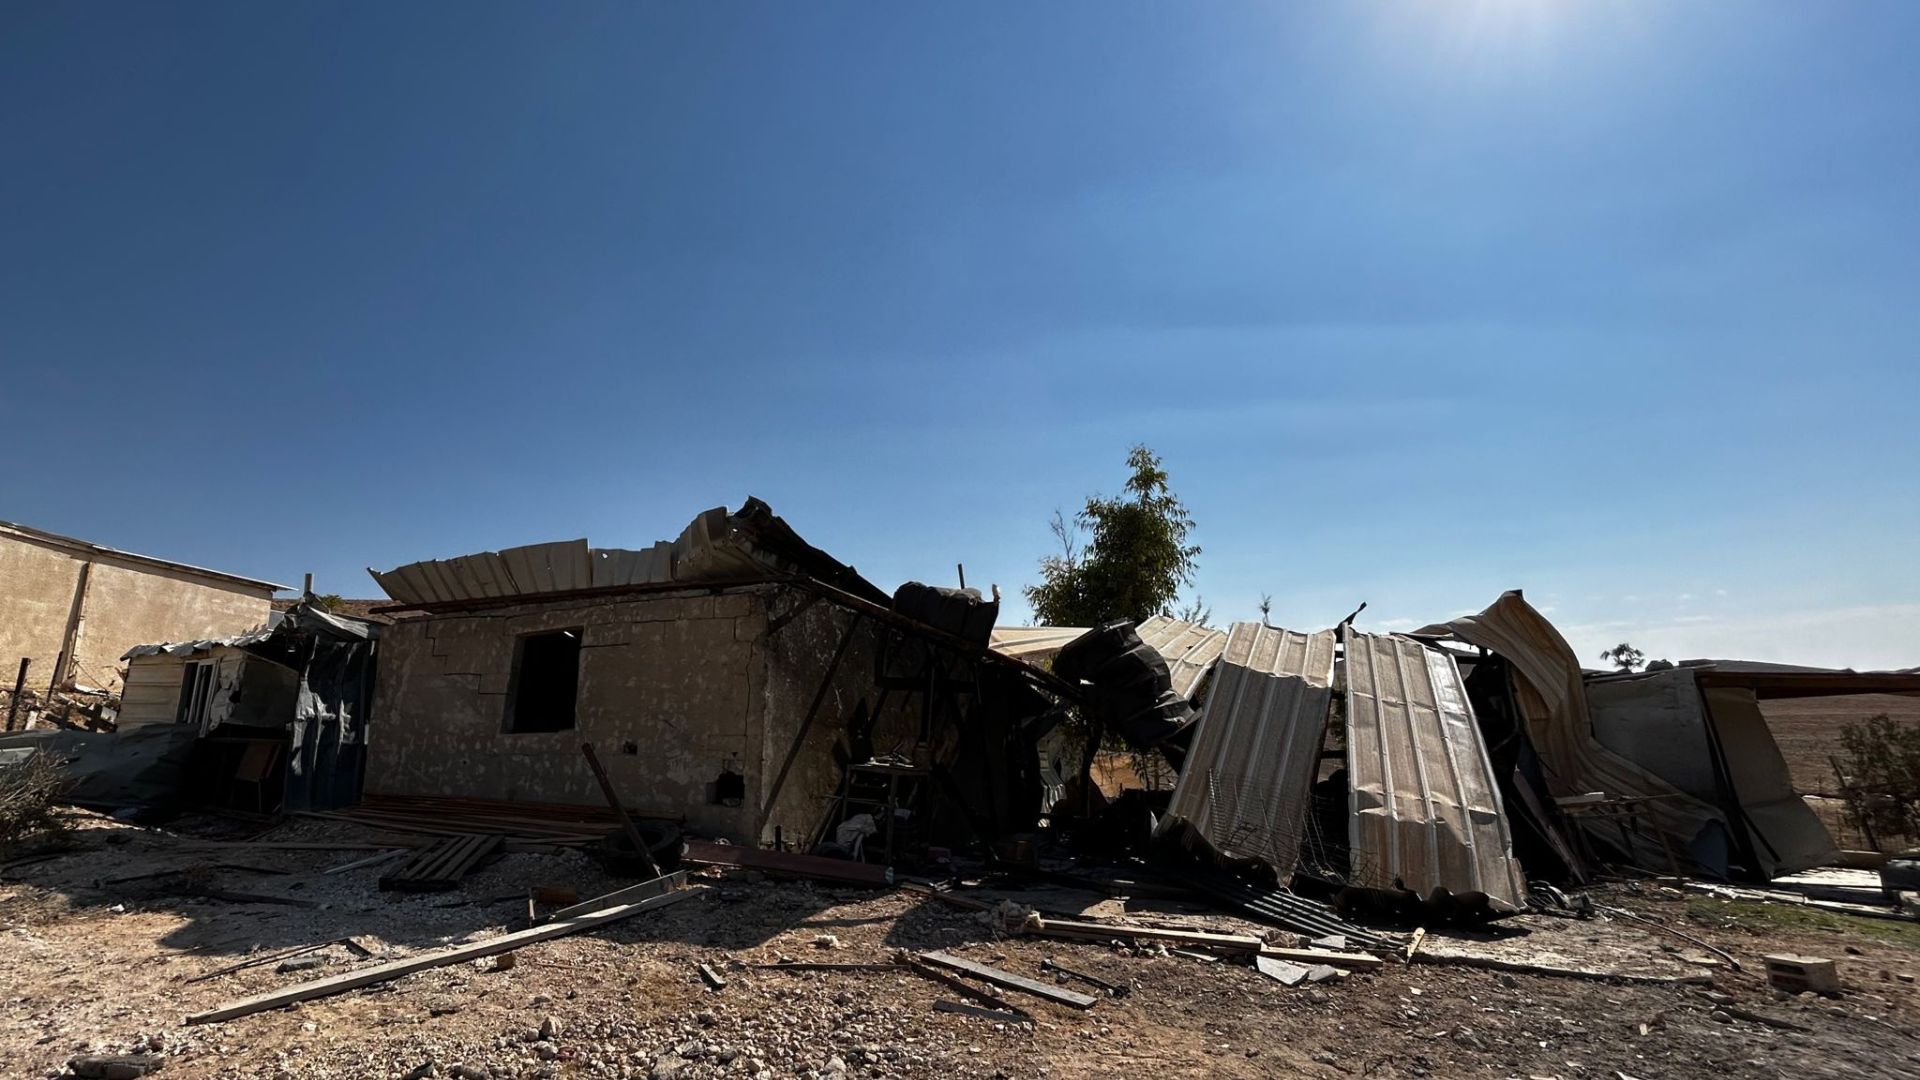 בית שנפגע מרקטה בכפר בדואי בדרום | צילום: מהרשתות לפי סעיף 27 א